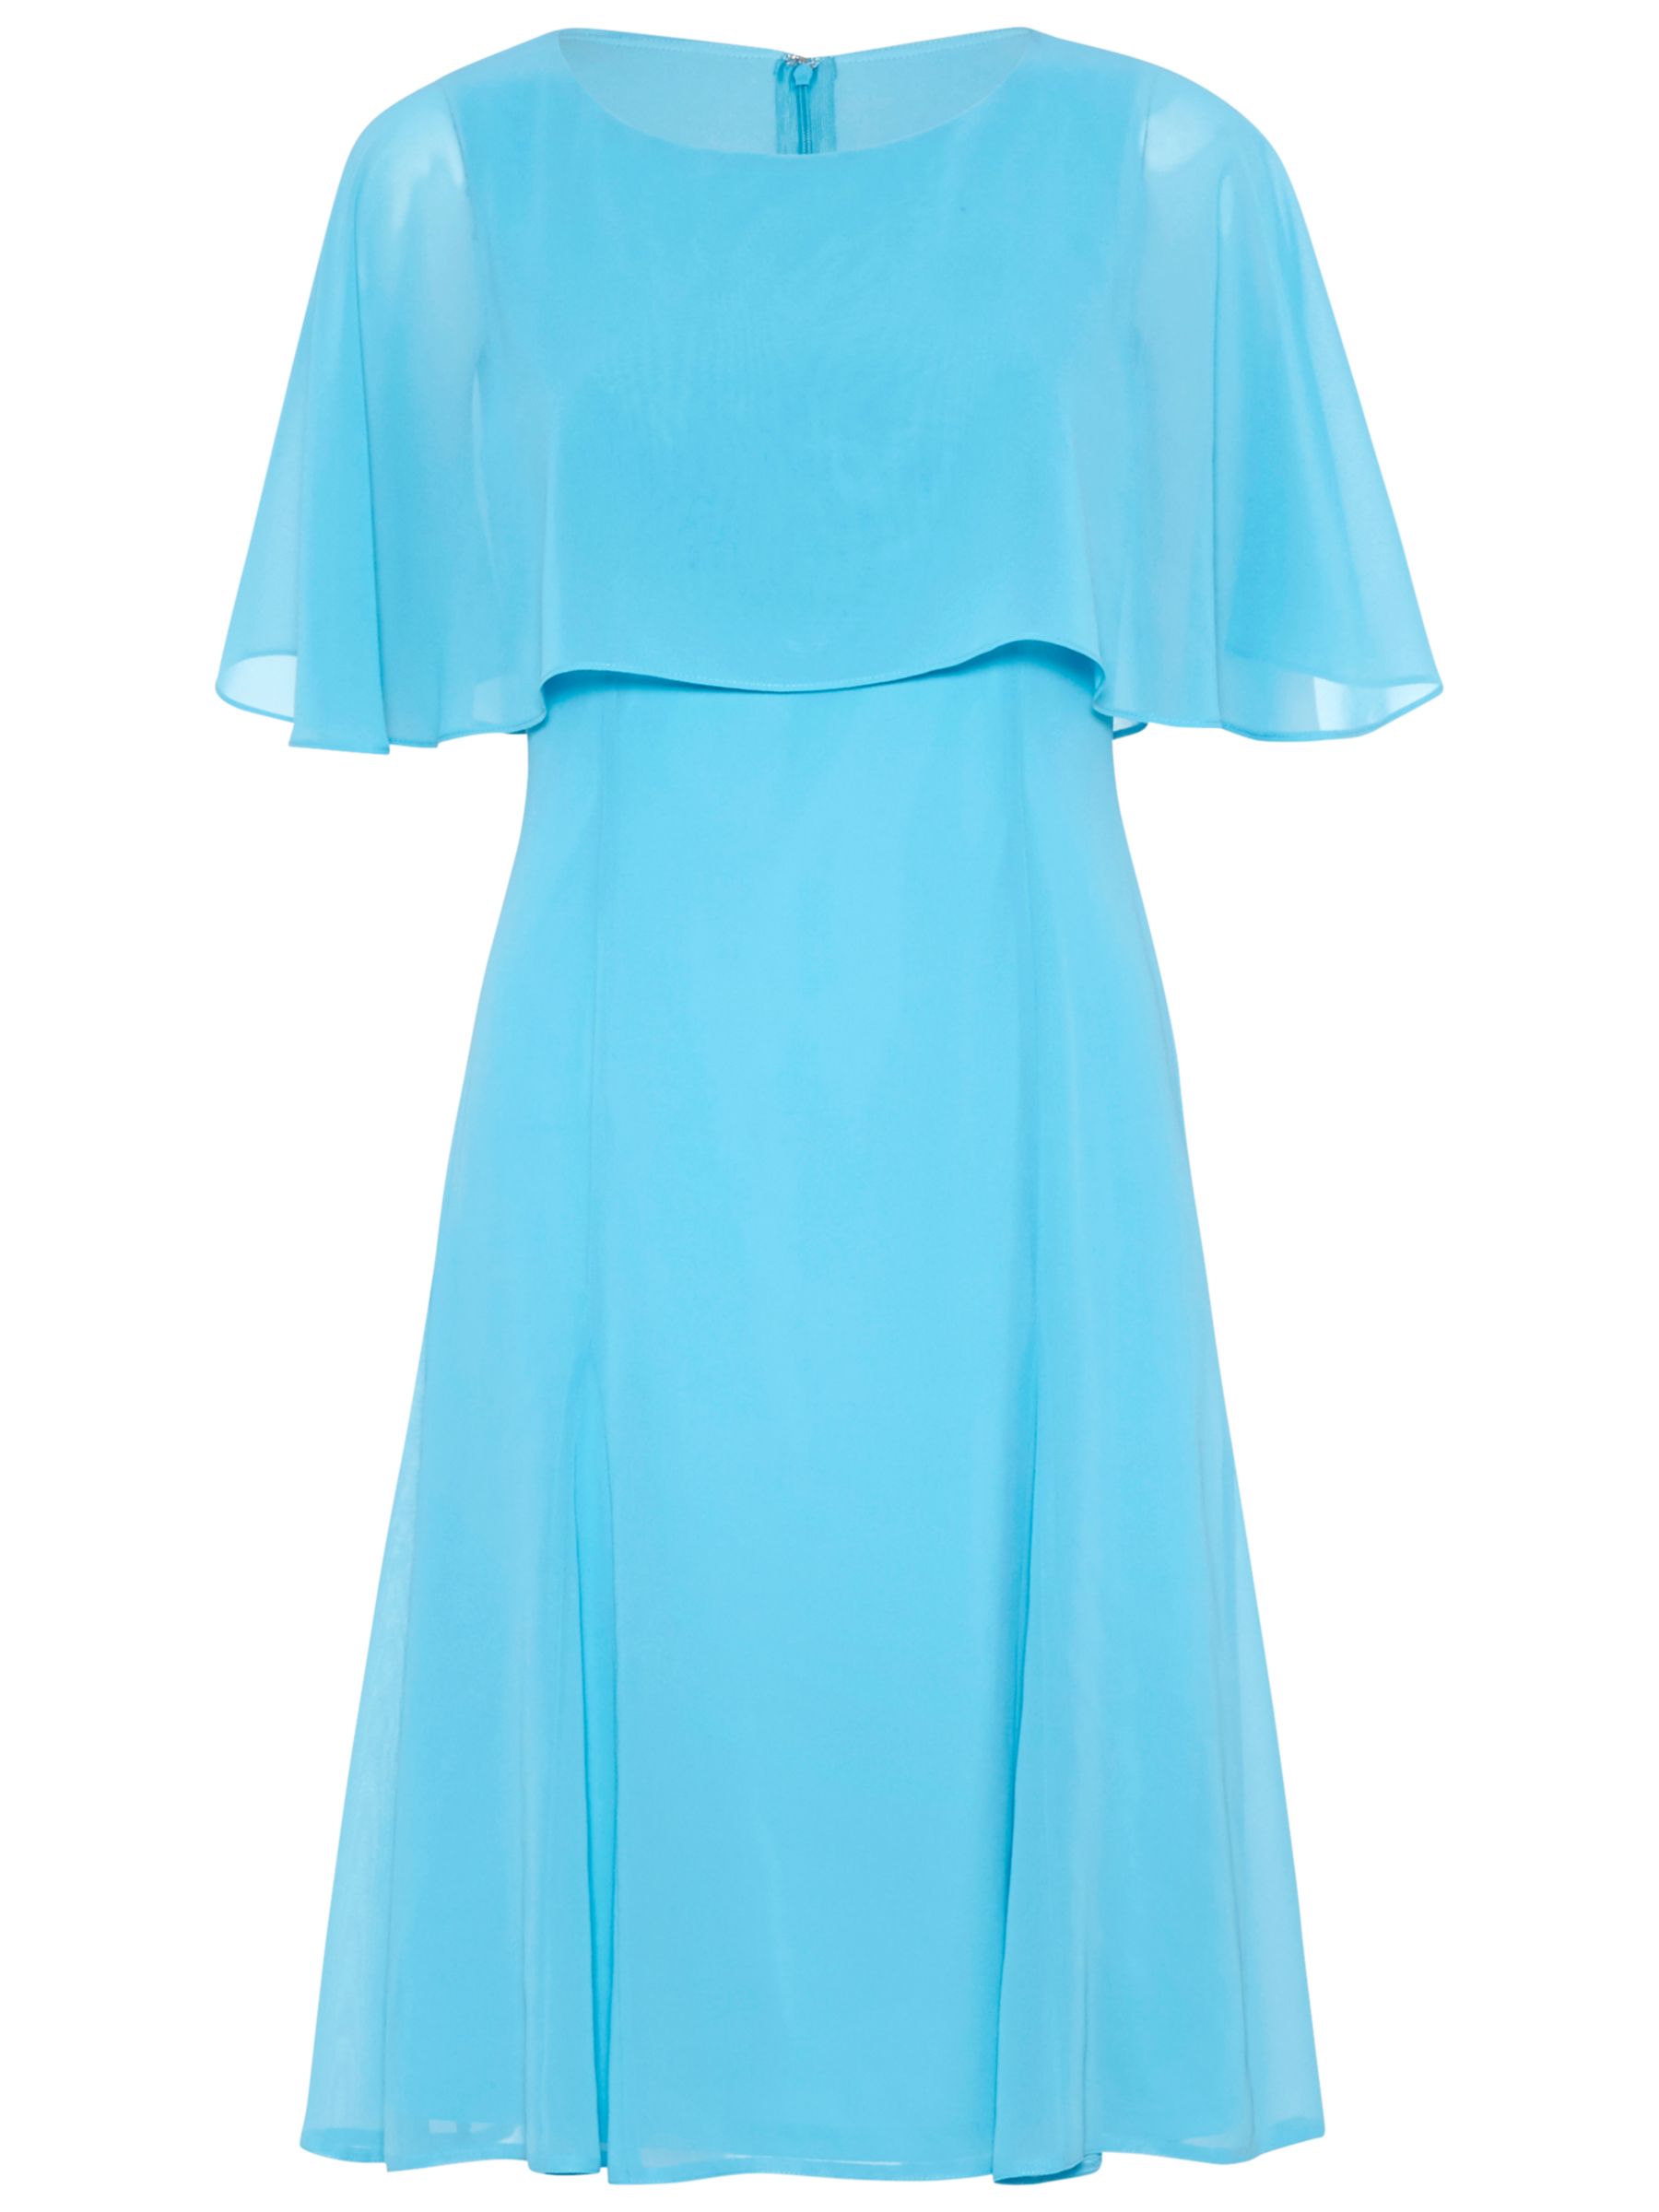 Gina Bacconi Chiffon Dress With Cape, Bright Blue